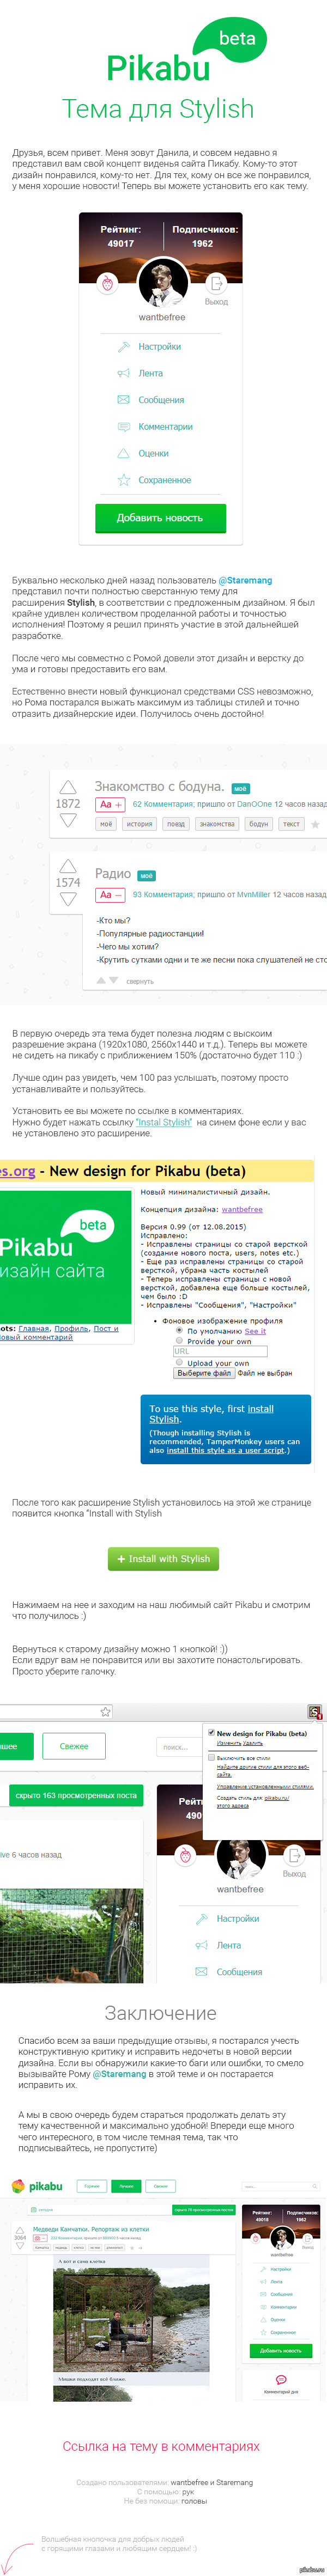   Pikabu.     <a href="http://pikabu.ru/story/redizayn_sayta_pikabu_beta_3535696">http://pikabu.ru/story/_3535696</a>